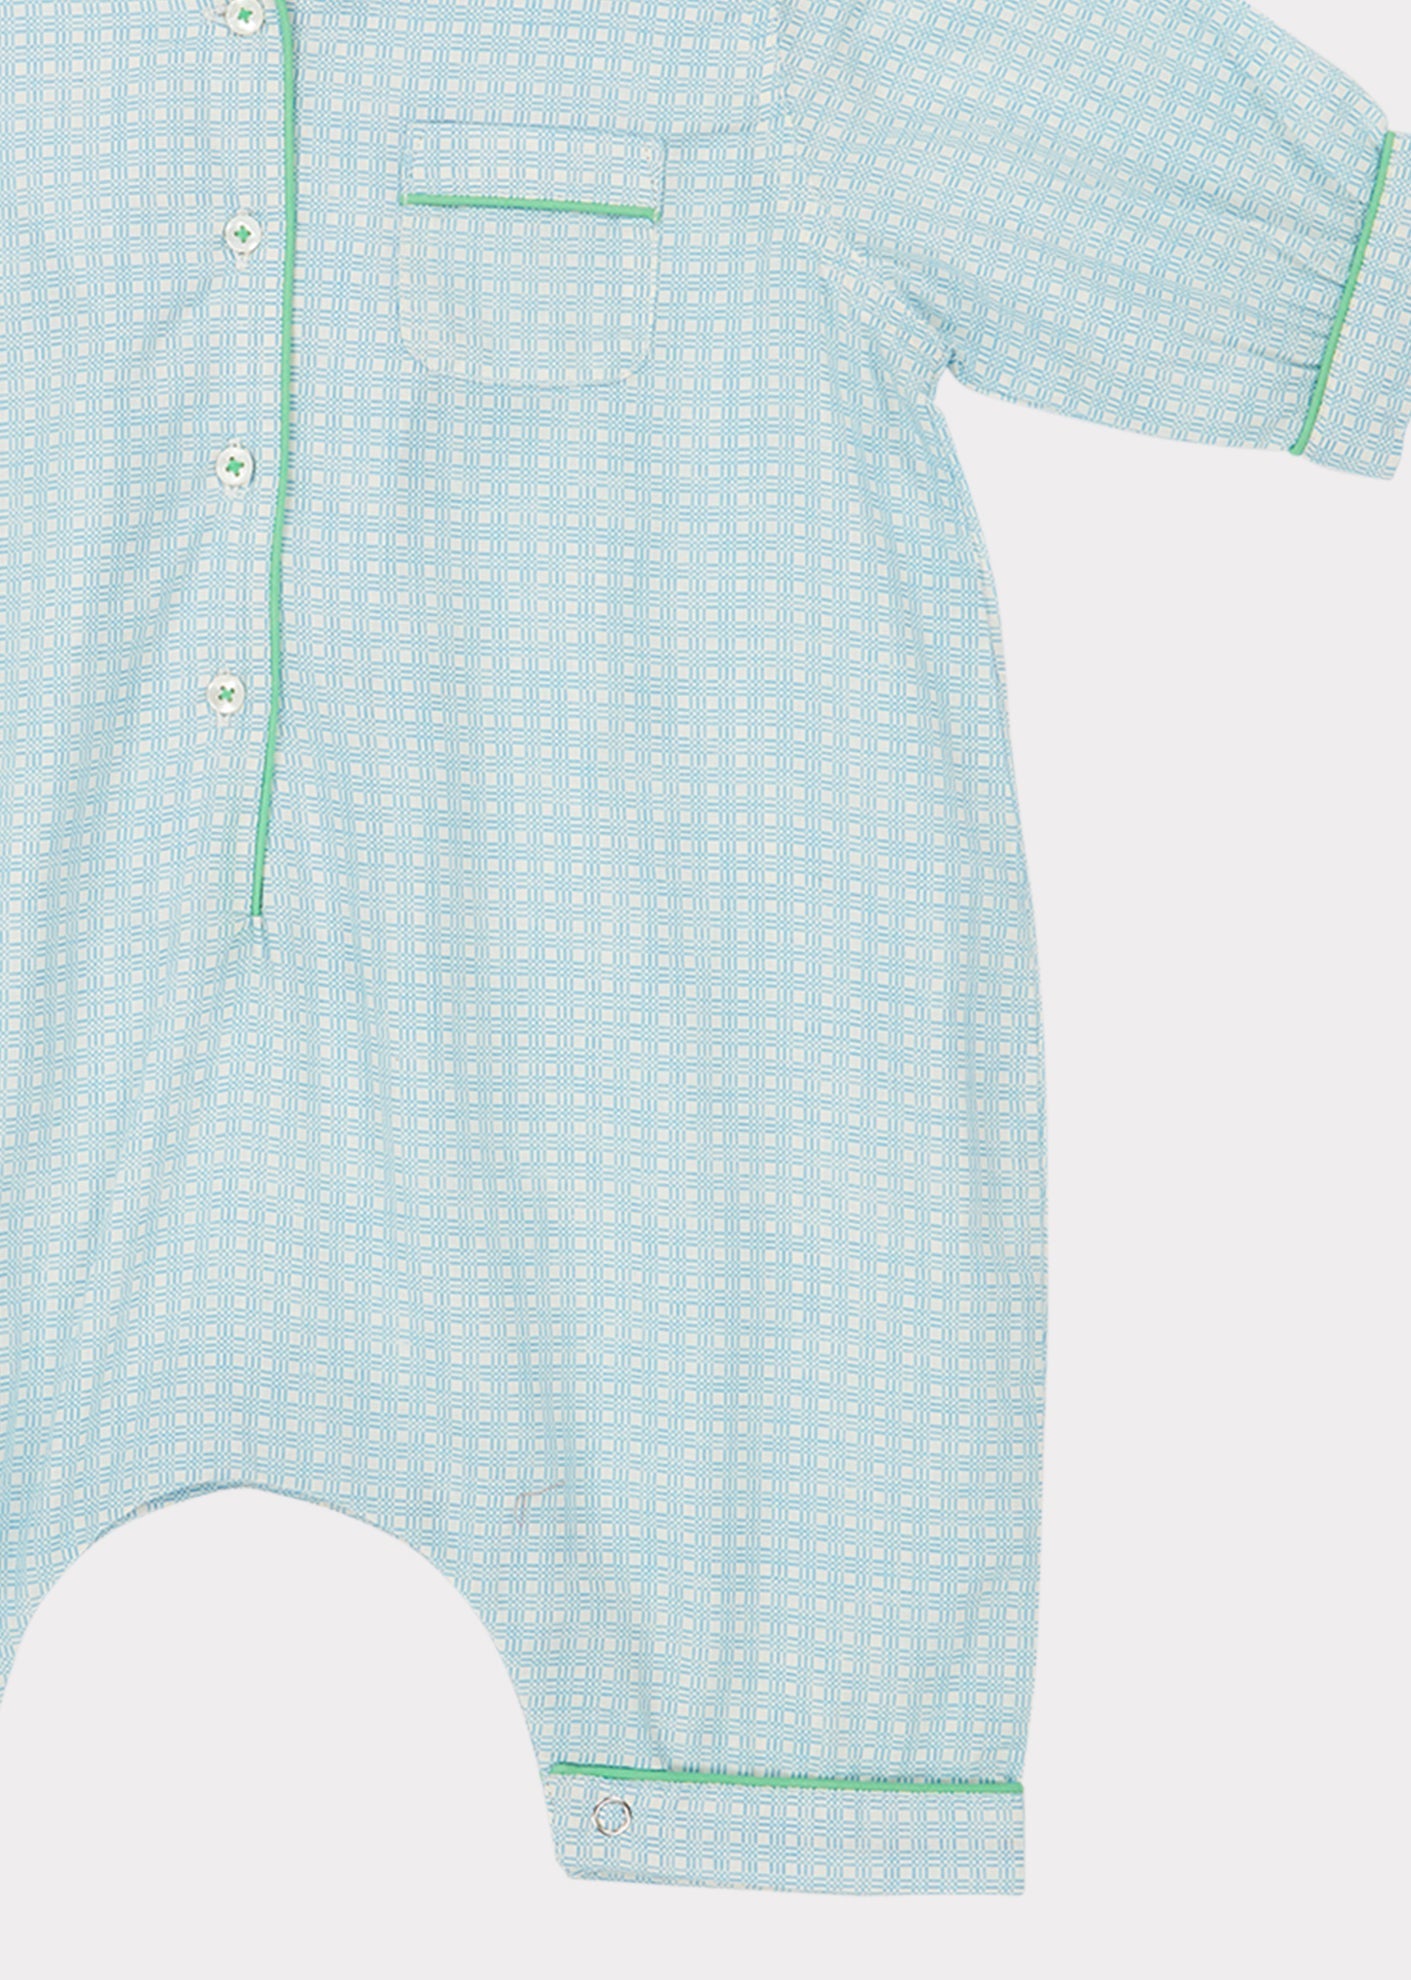 Baby Pyjamas, Blue Check